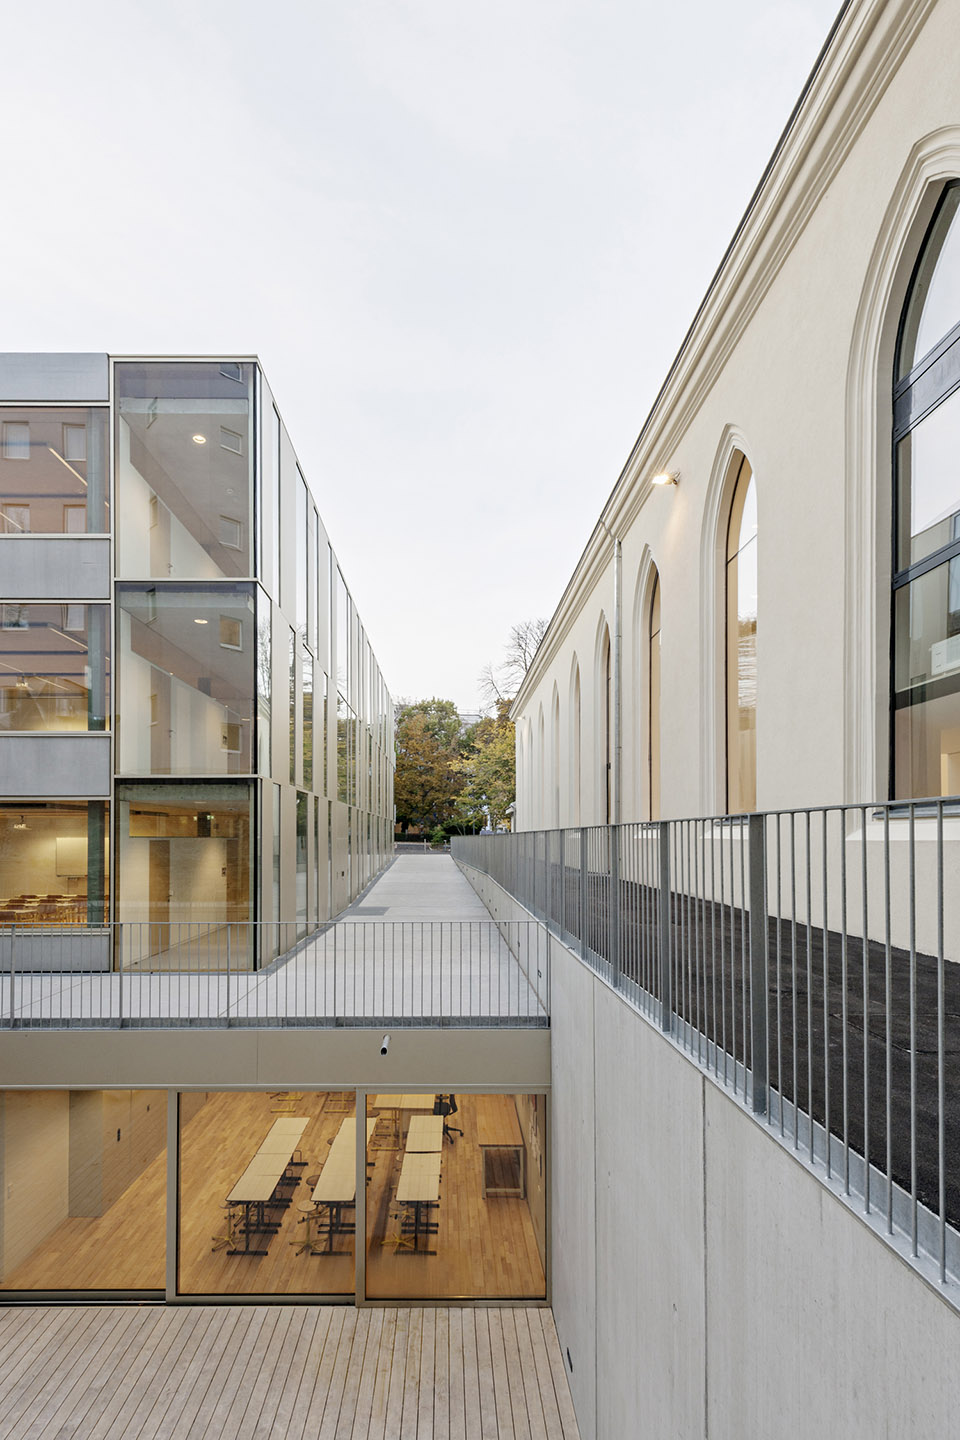 维也纳法国学校扩建及Molière工作室翻新/在构建新教学楼的同时彰显旧剧场的文化功能-50